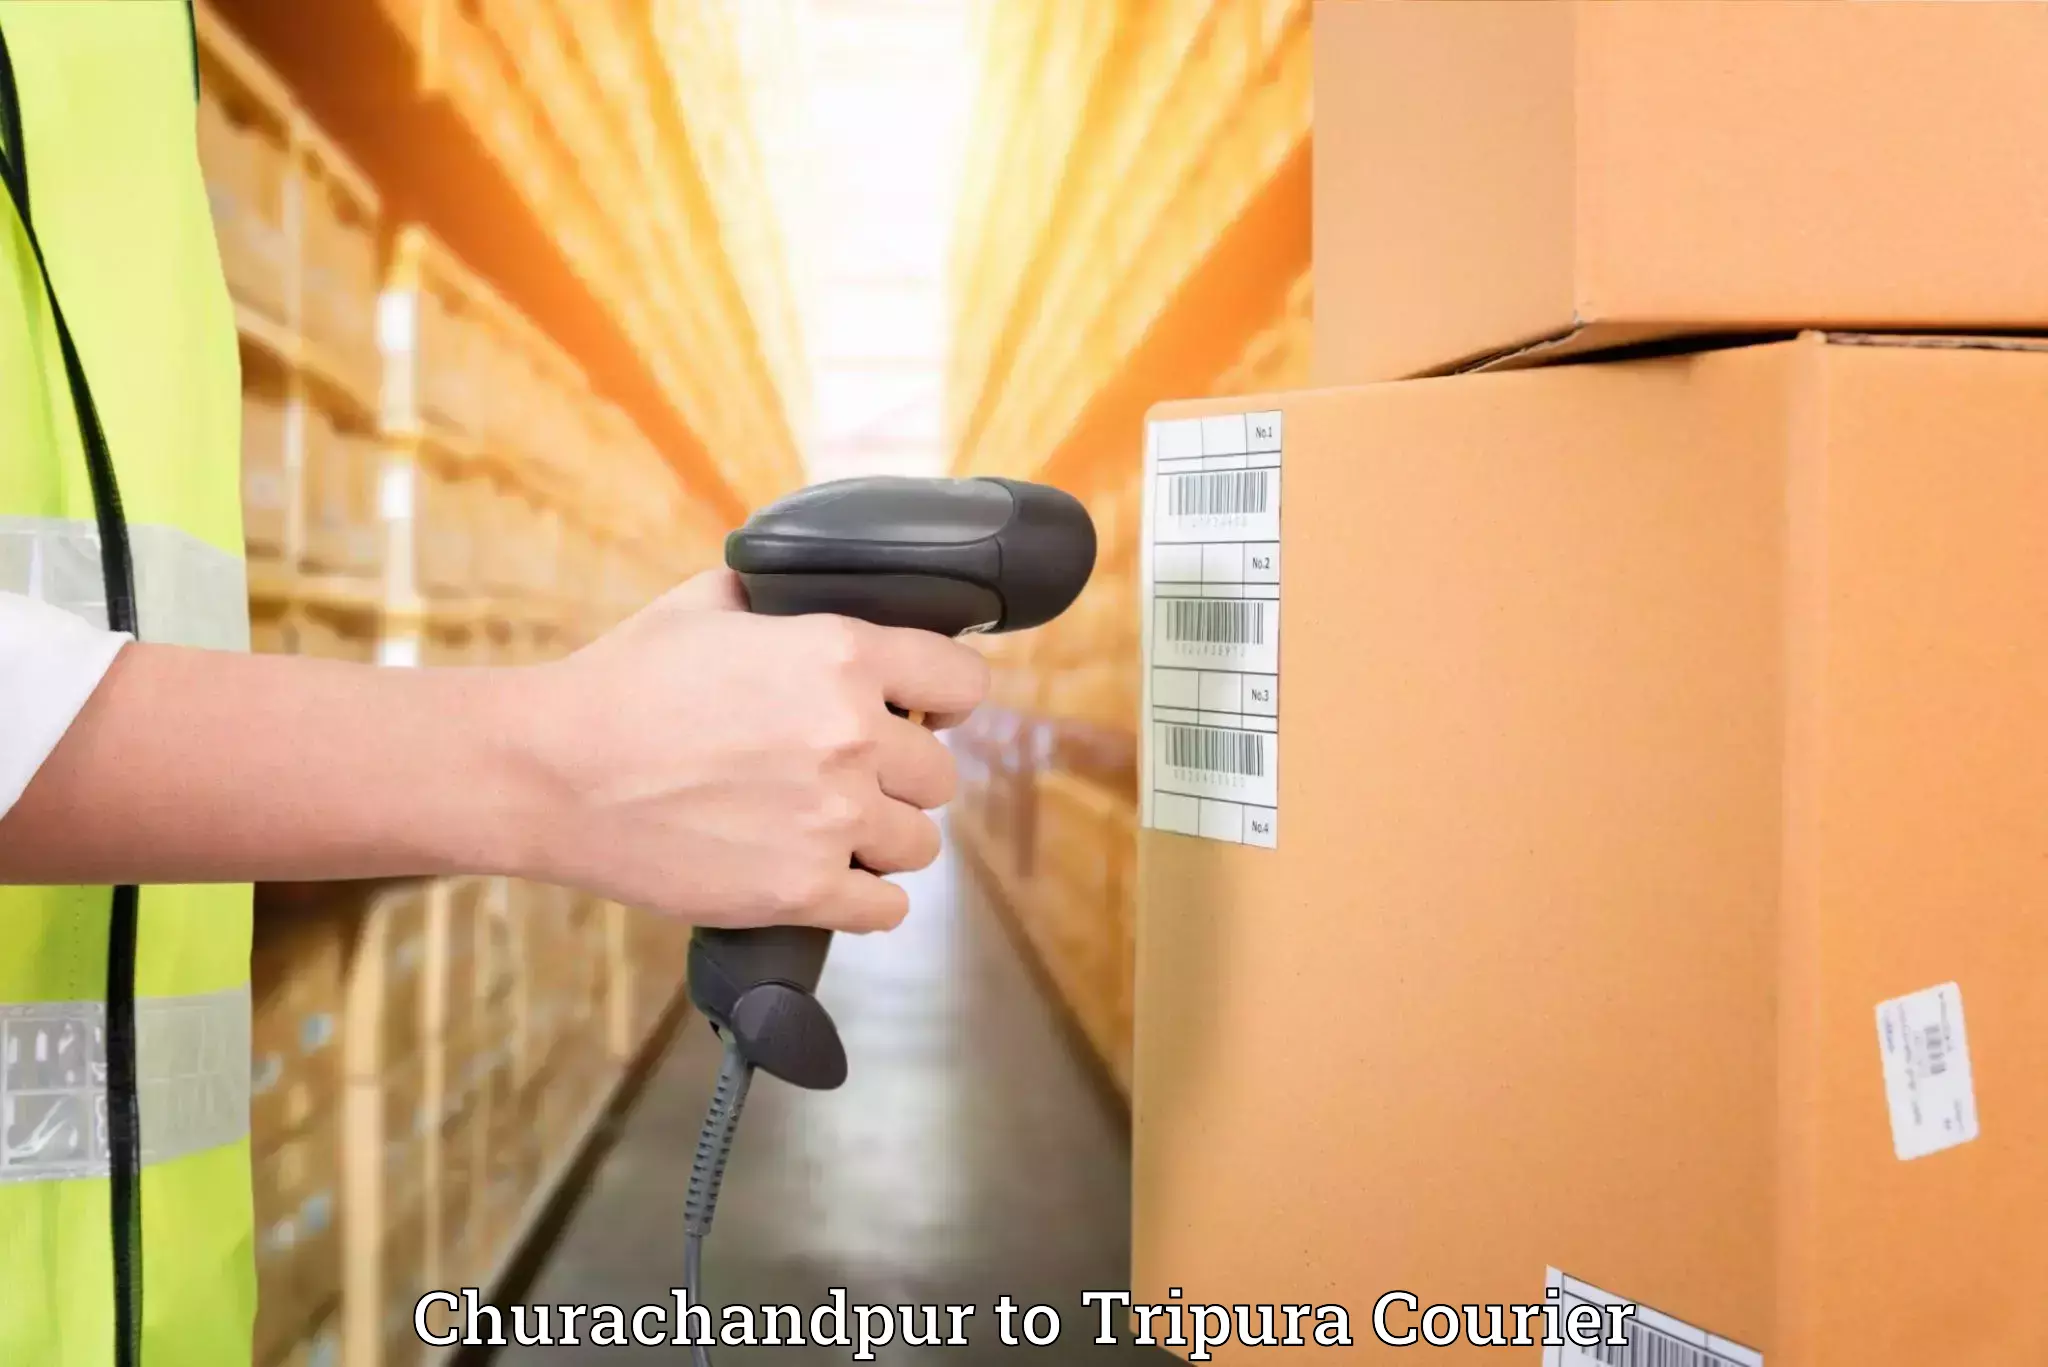 Household goods movers and packers in Churachandpur to Bishalgarh